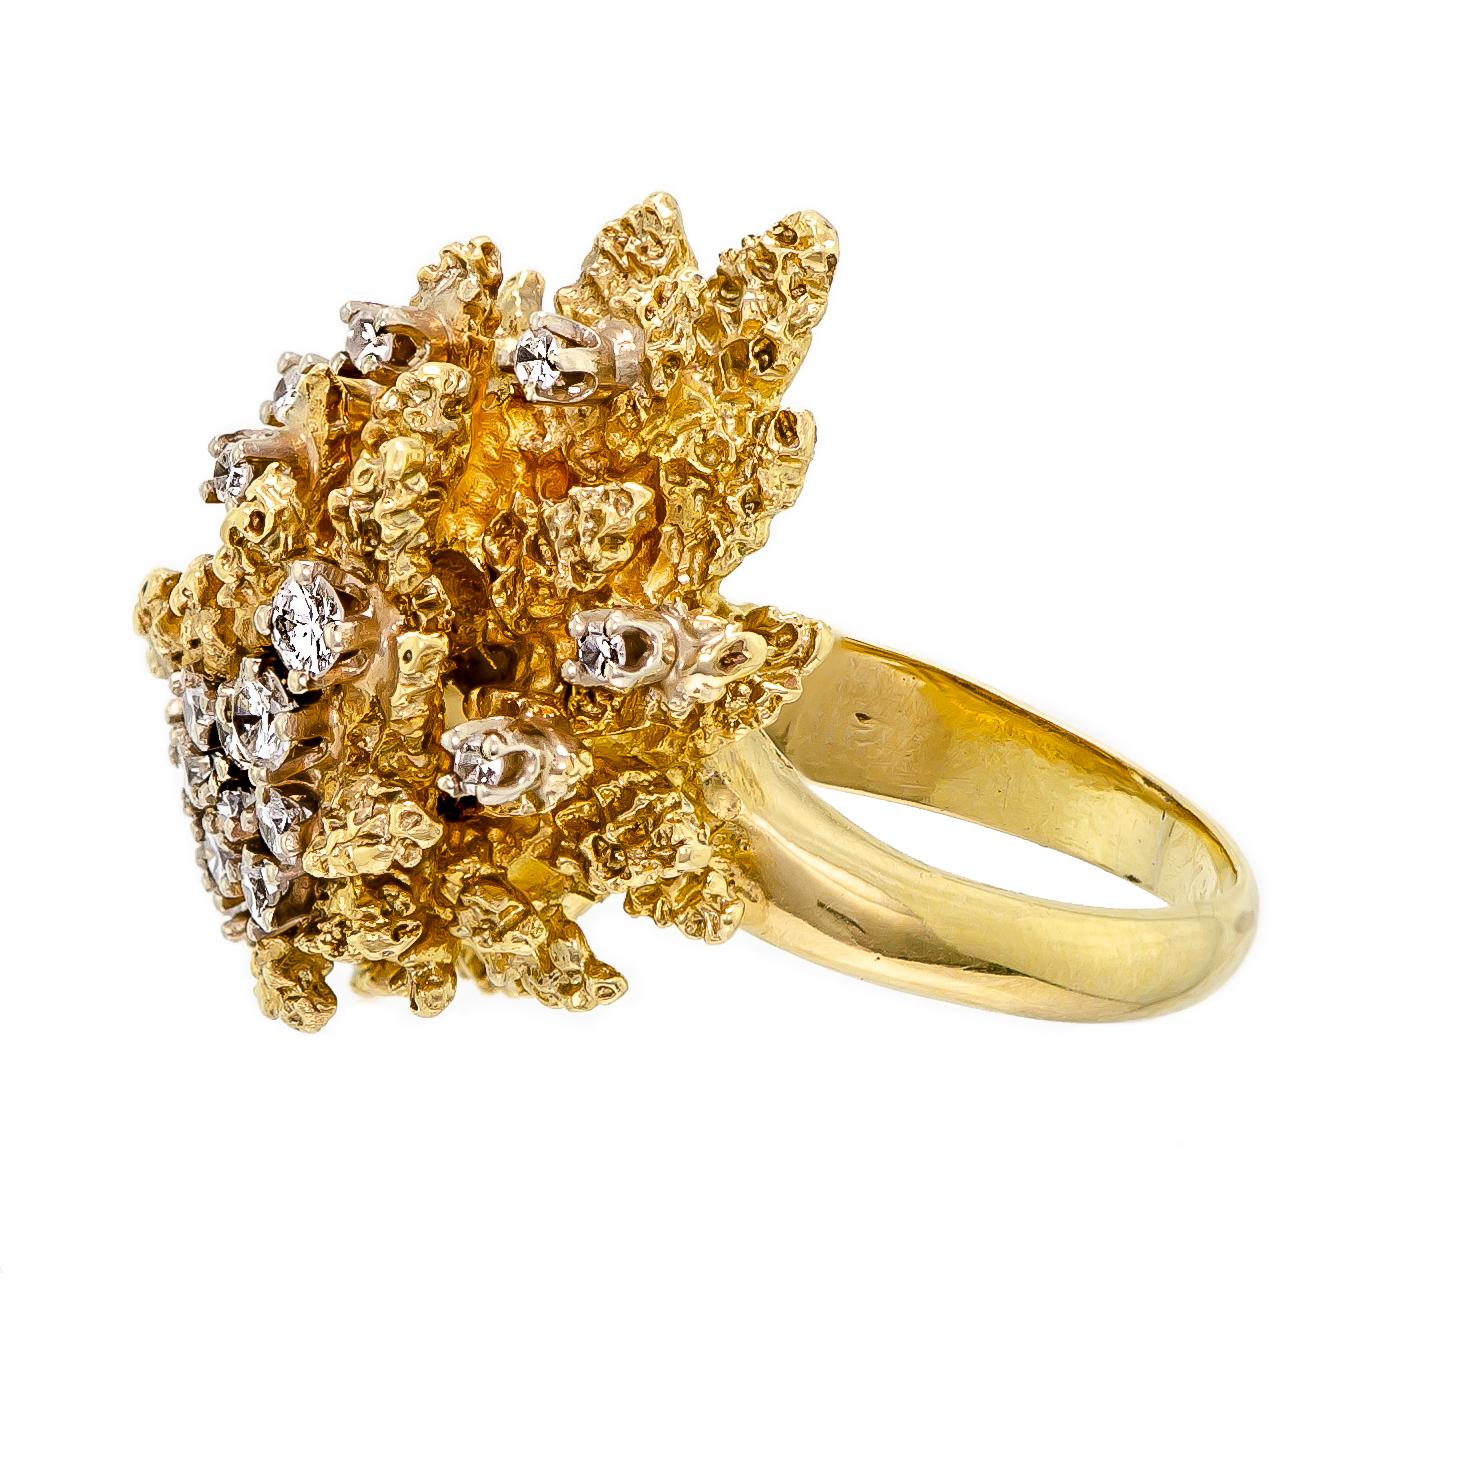 Vintage lourd circa 1960 diamant et or jaune 18k bague spray abstrait. Sertie d'éblouissants diamants ronds taille brillant moulés dans une intéressante monture en or finition écorce. Le poinçon se trouve à l'intérieur de la tige de l'anneau. Marque